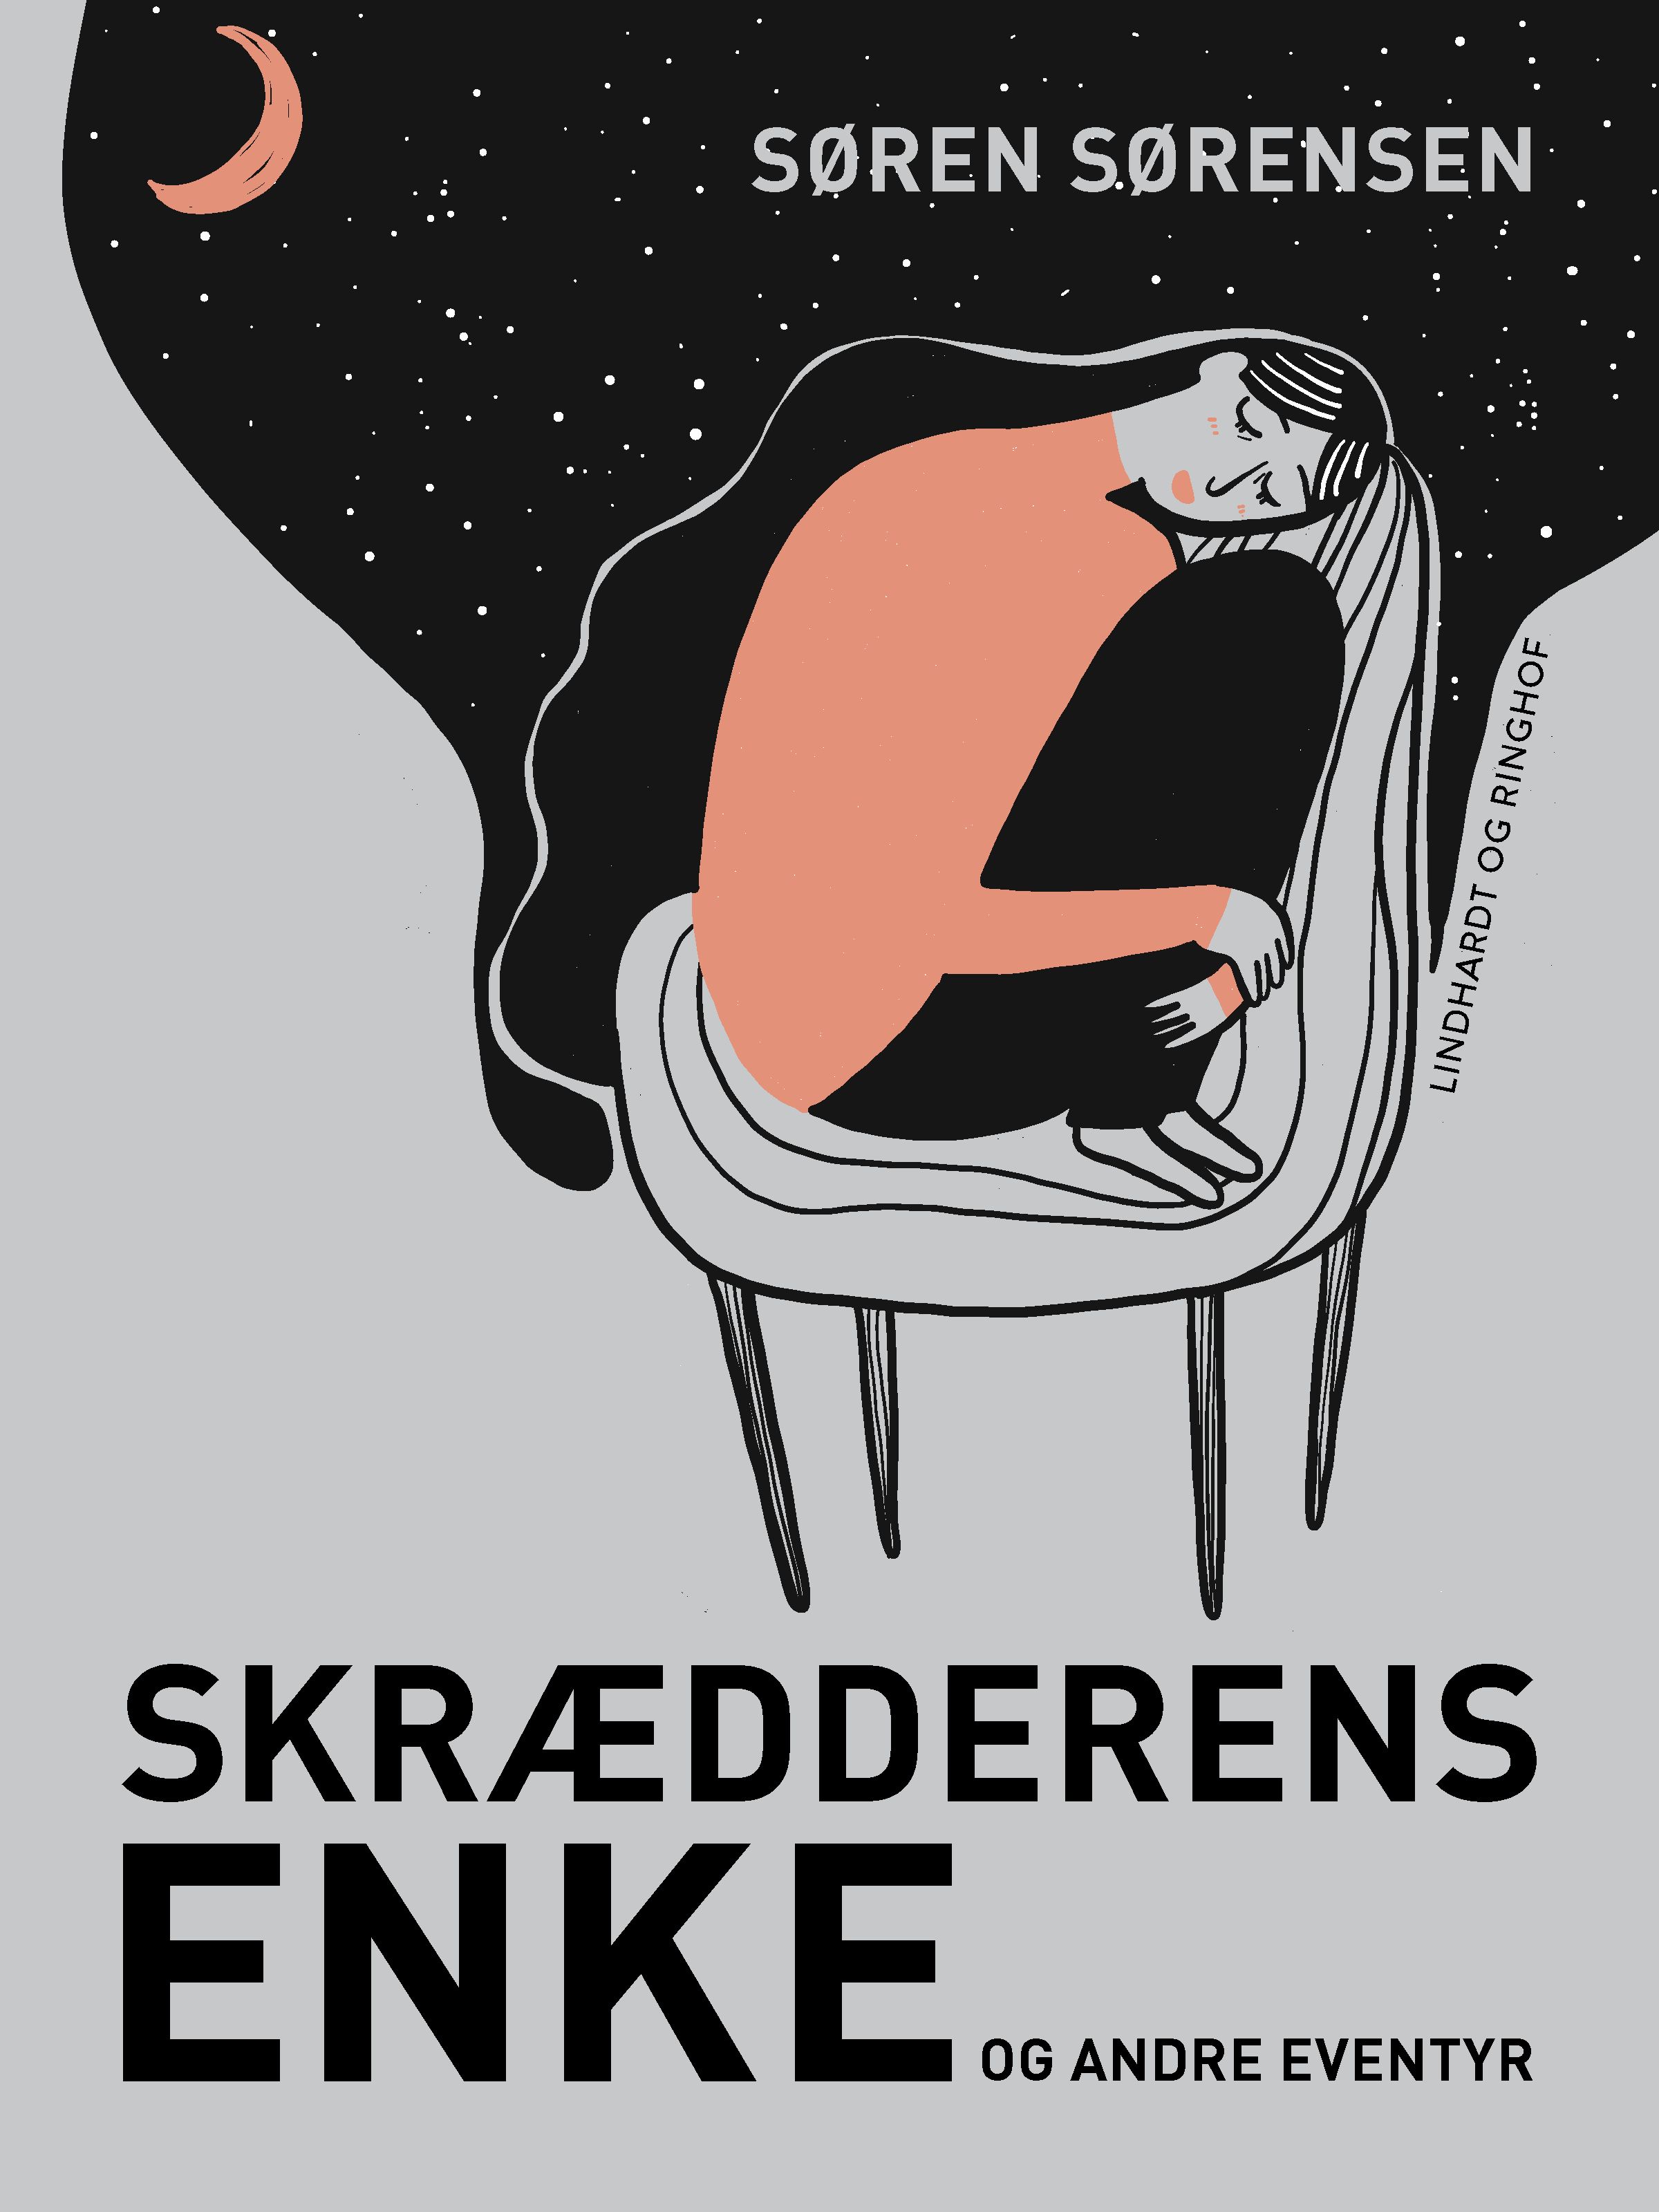 Skrædderens enke og andre eventyr, eBook by Søren Sørensen